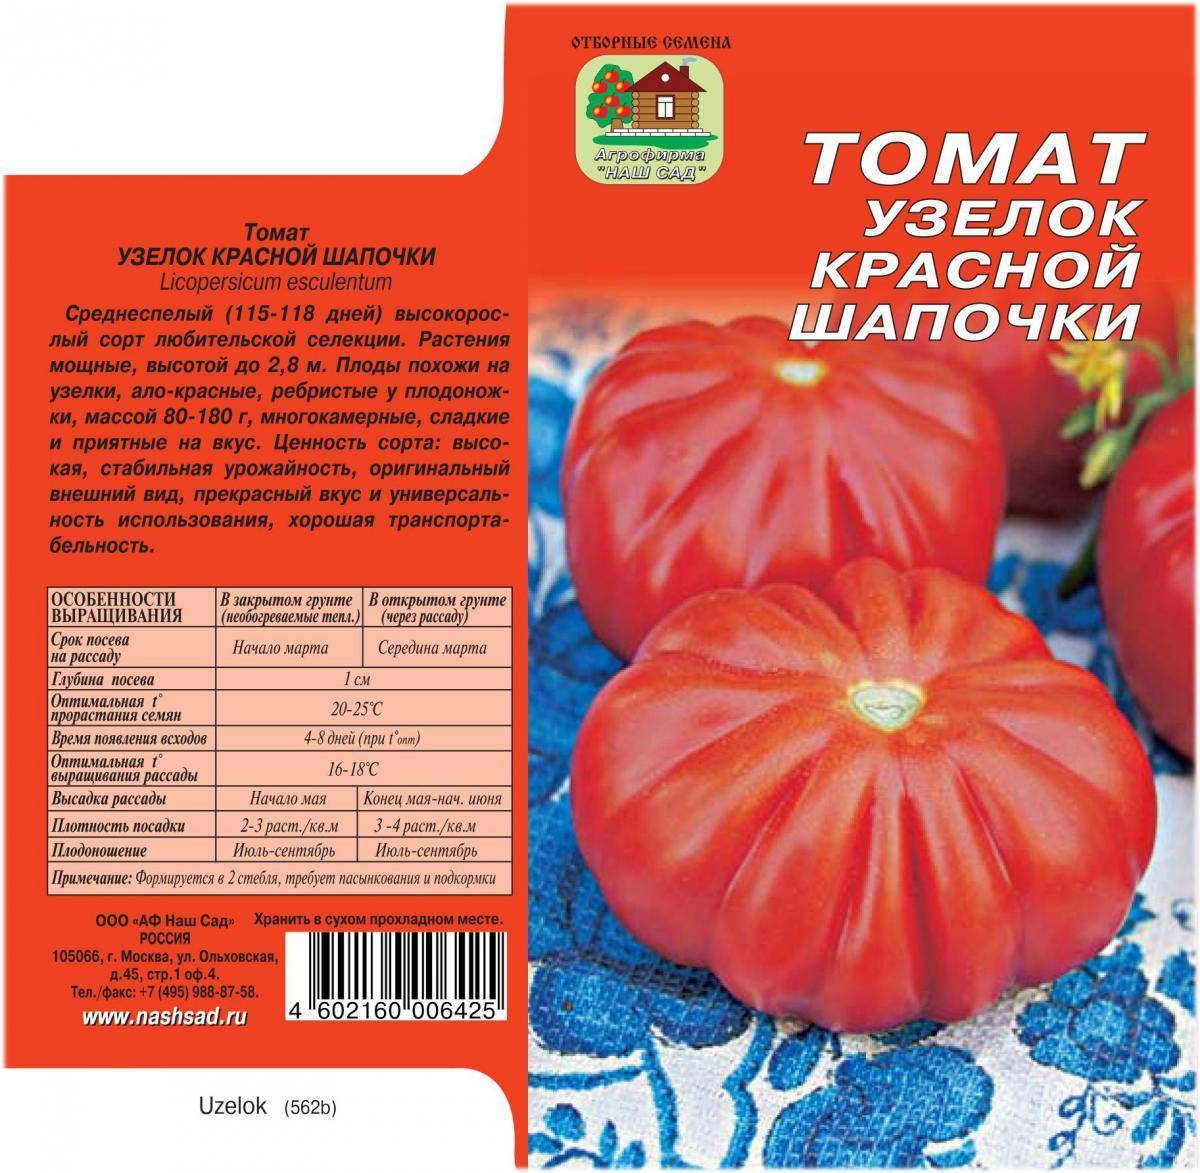 Ранний и низкорослый сорт томатов ажур f1